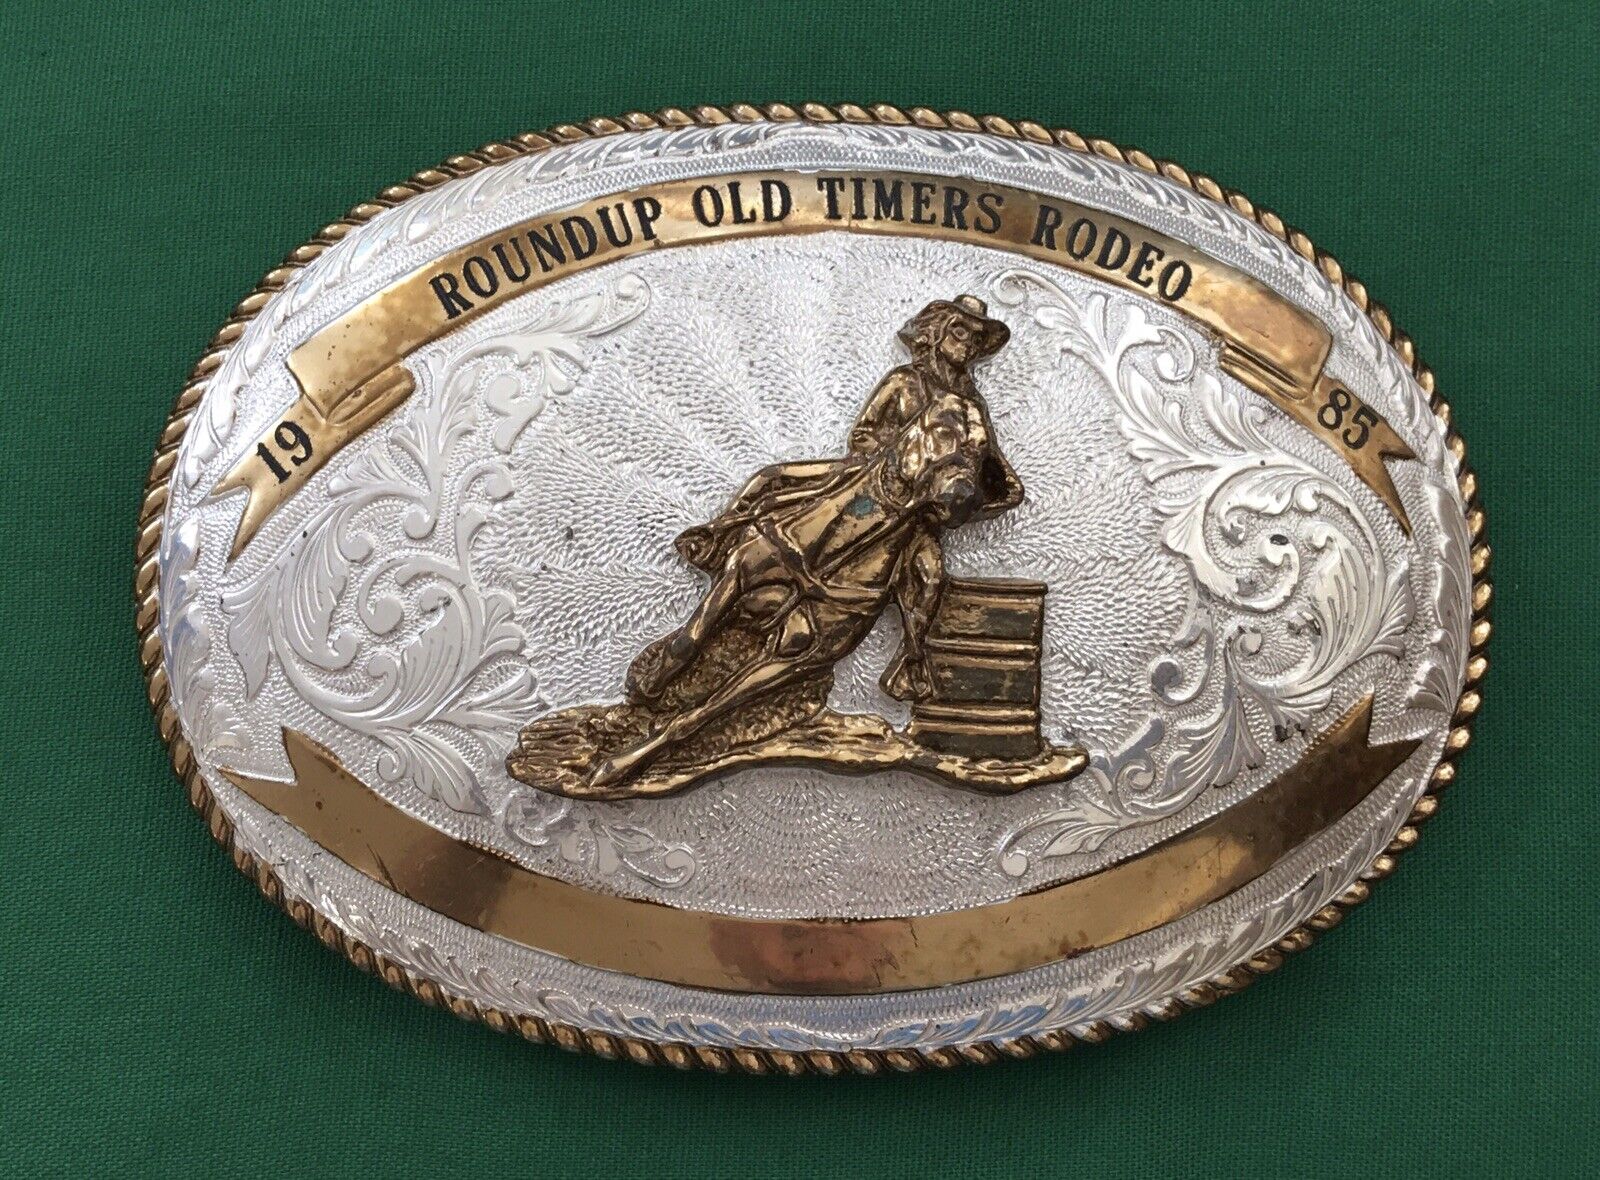 MEGA SALE   Vintage Huge 1985 Roundup Old Timers Rodeo Cowboy Trophy Belt Buckle